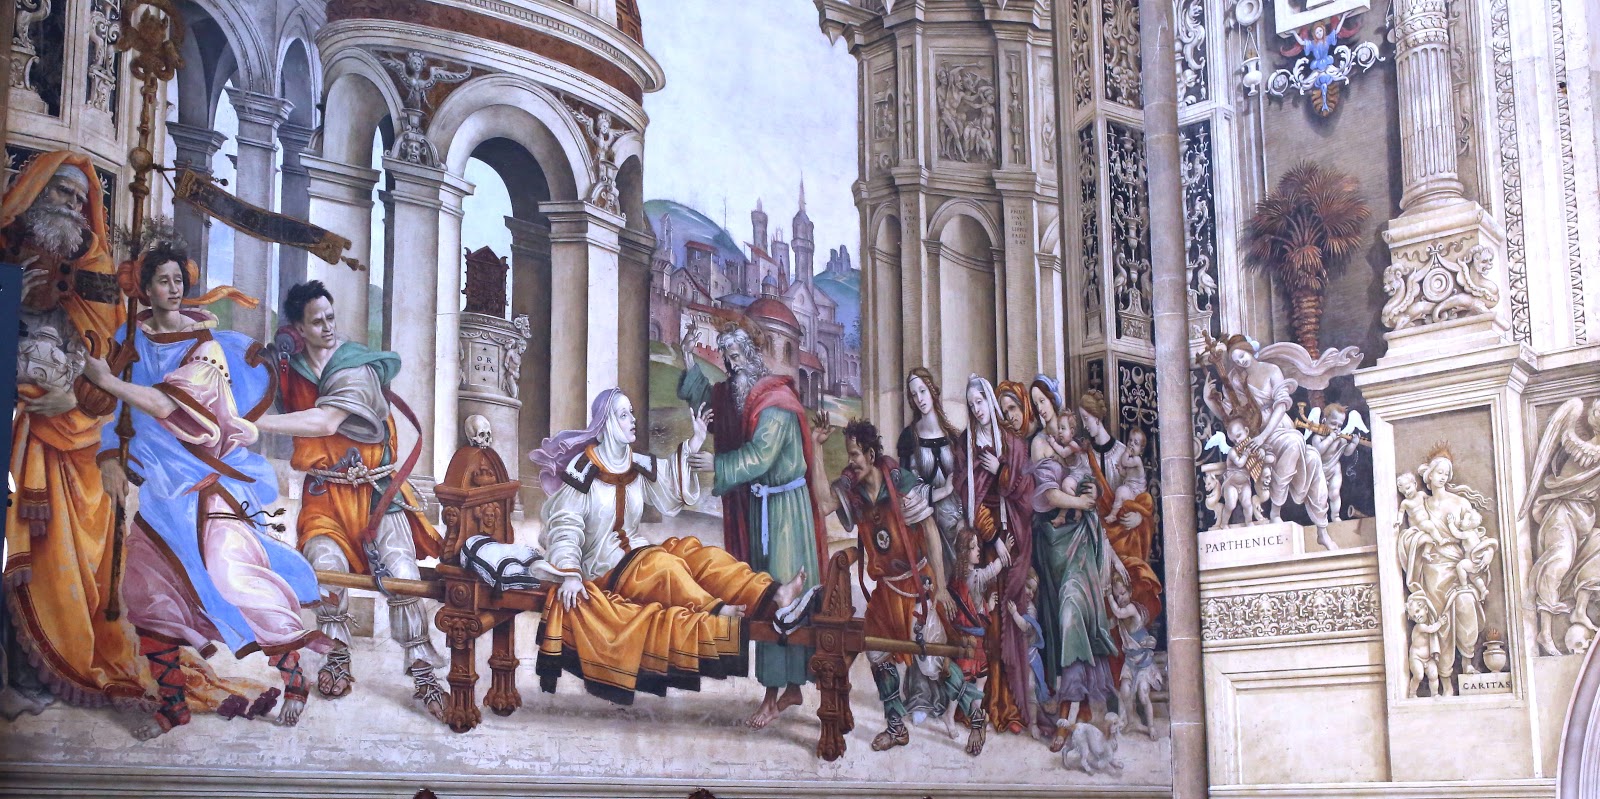 Filippino+Lippi-1457-1504 (35).jpg